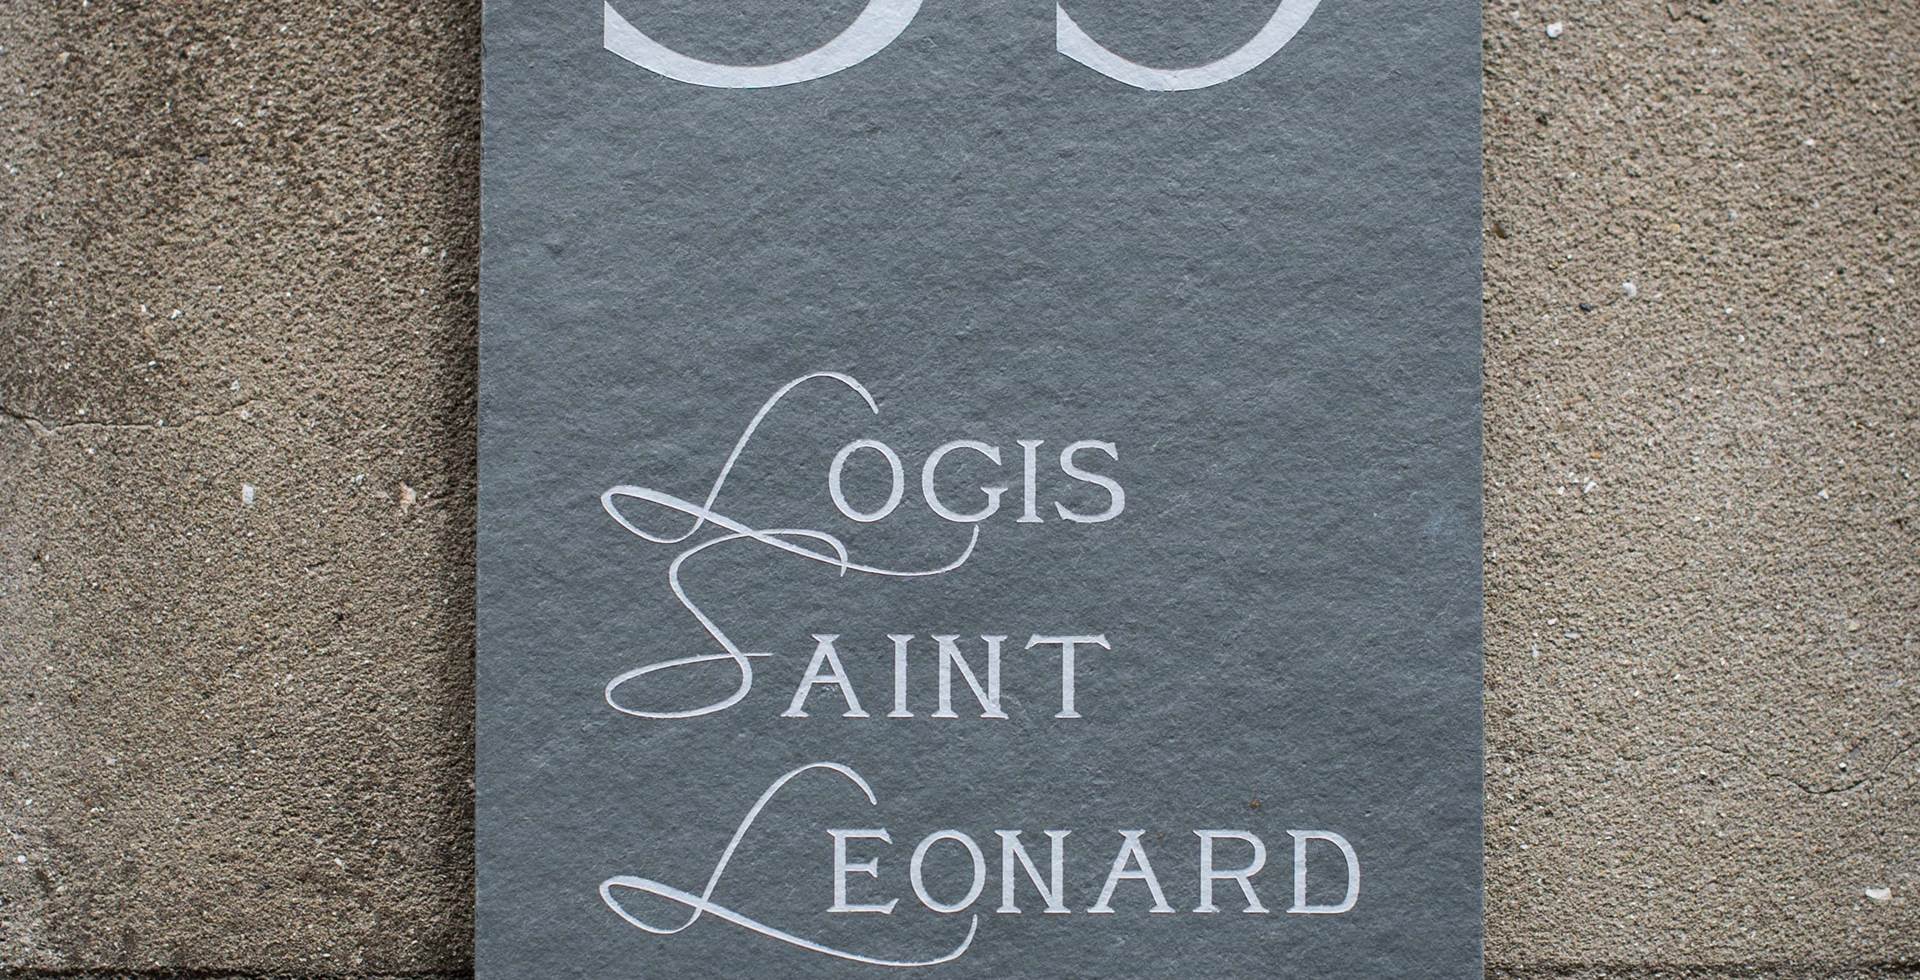 Logis Saint-Léonard